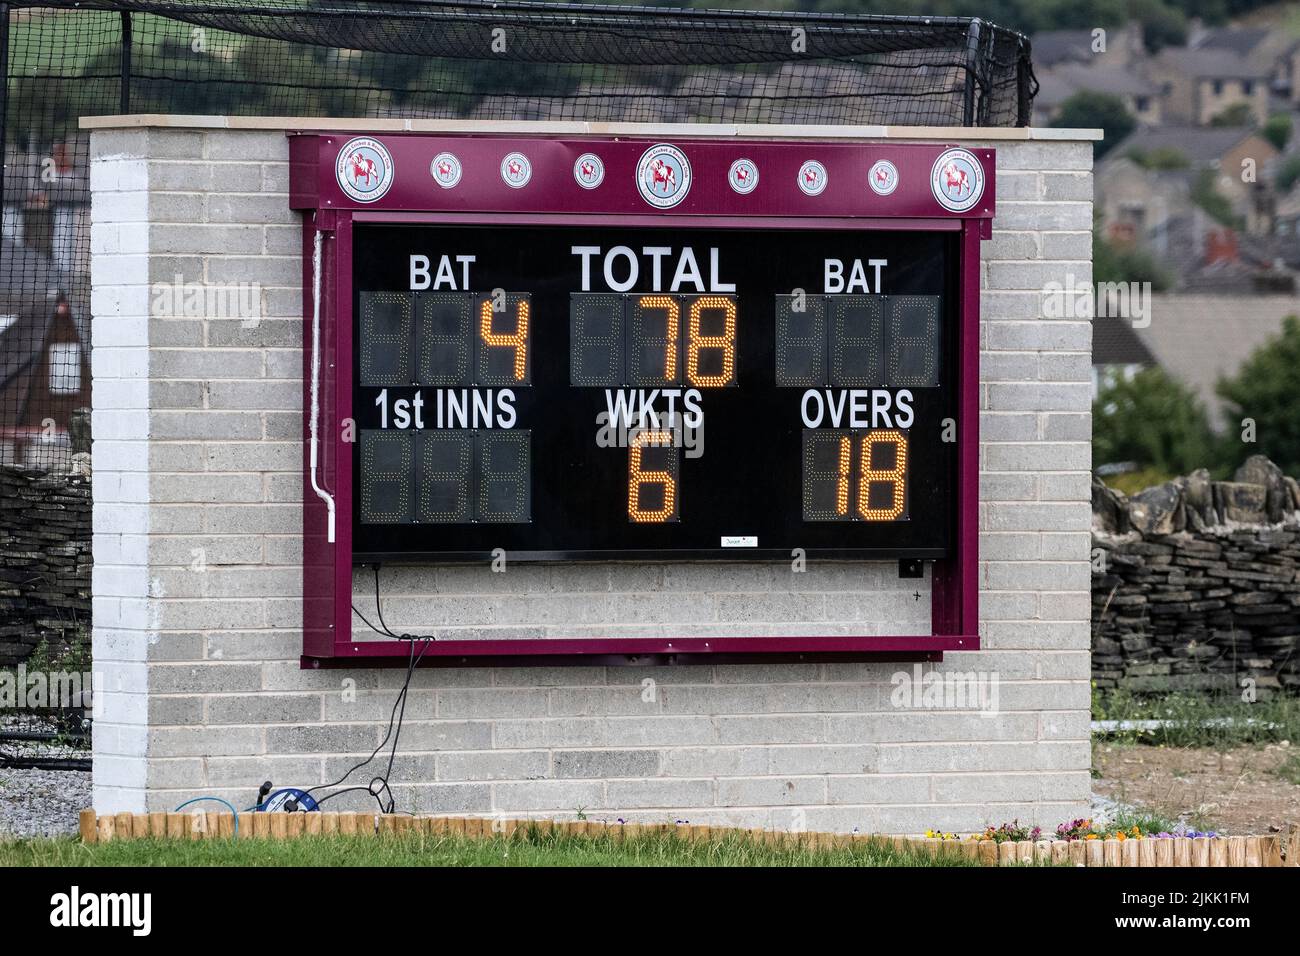 Un tableau de bord de cricket à affichage numérique électronique montrant des scores, des lickets et des overs lors d'un match de village local à Kirkheaton, dans le West Yorkshire, au Royaume-Uni Banque D'Images